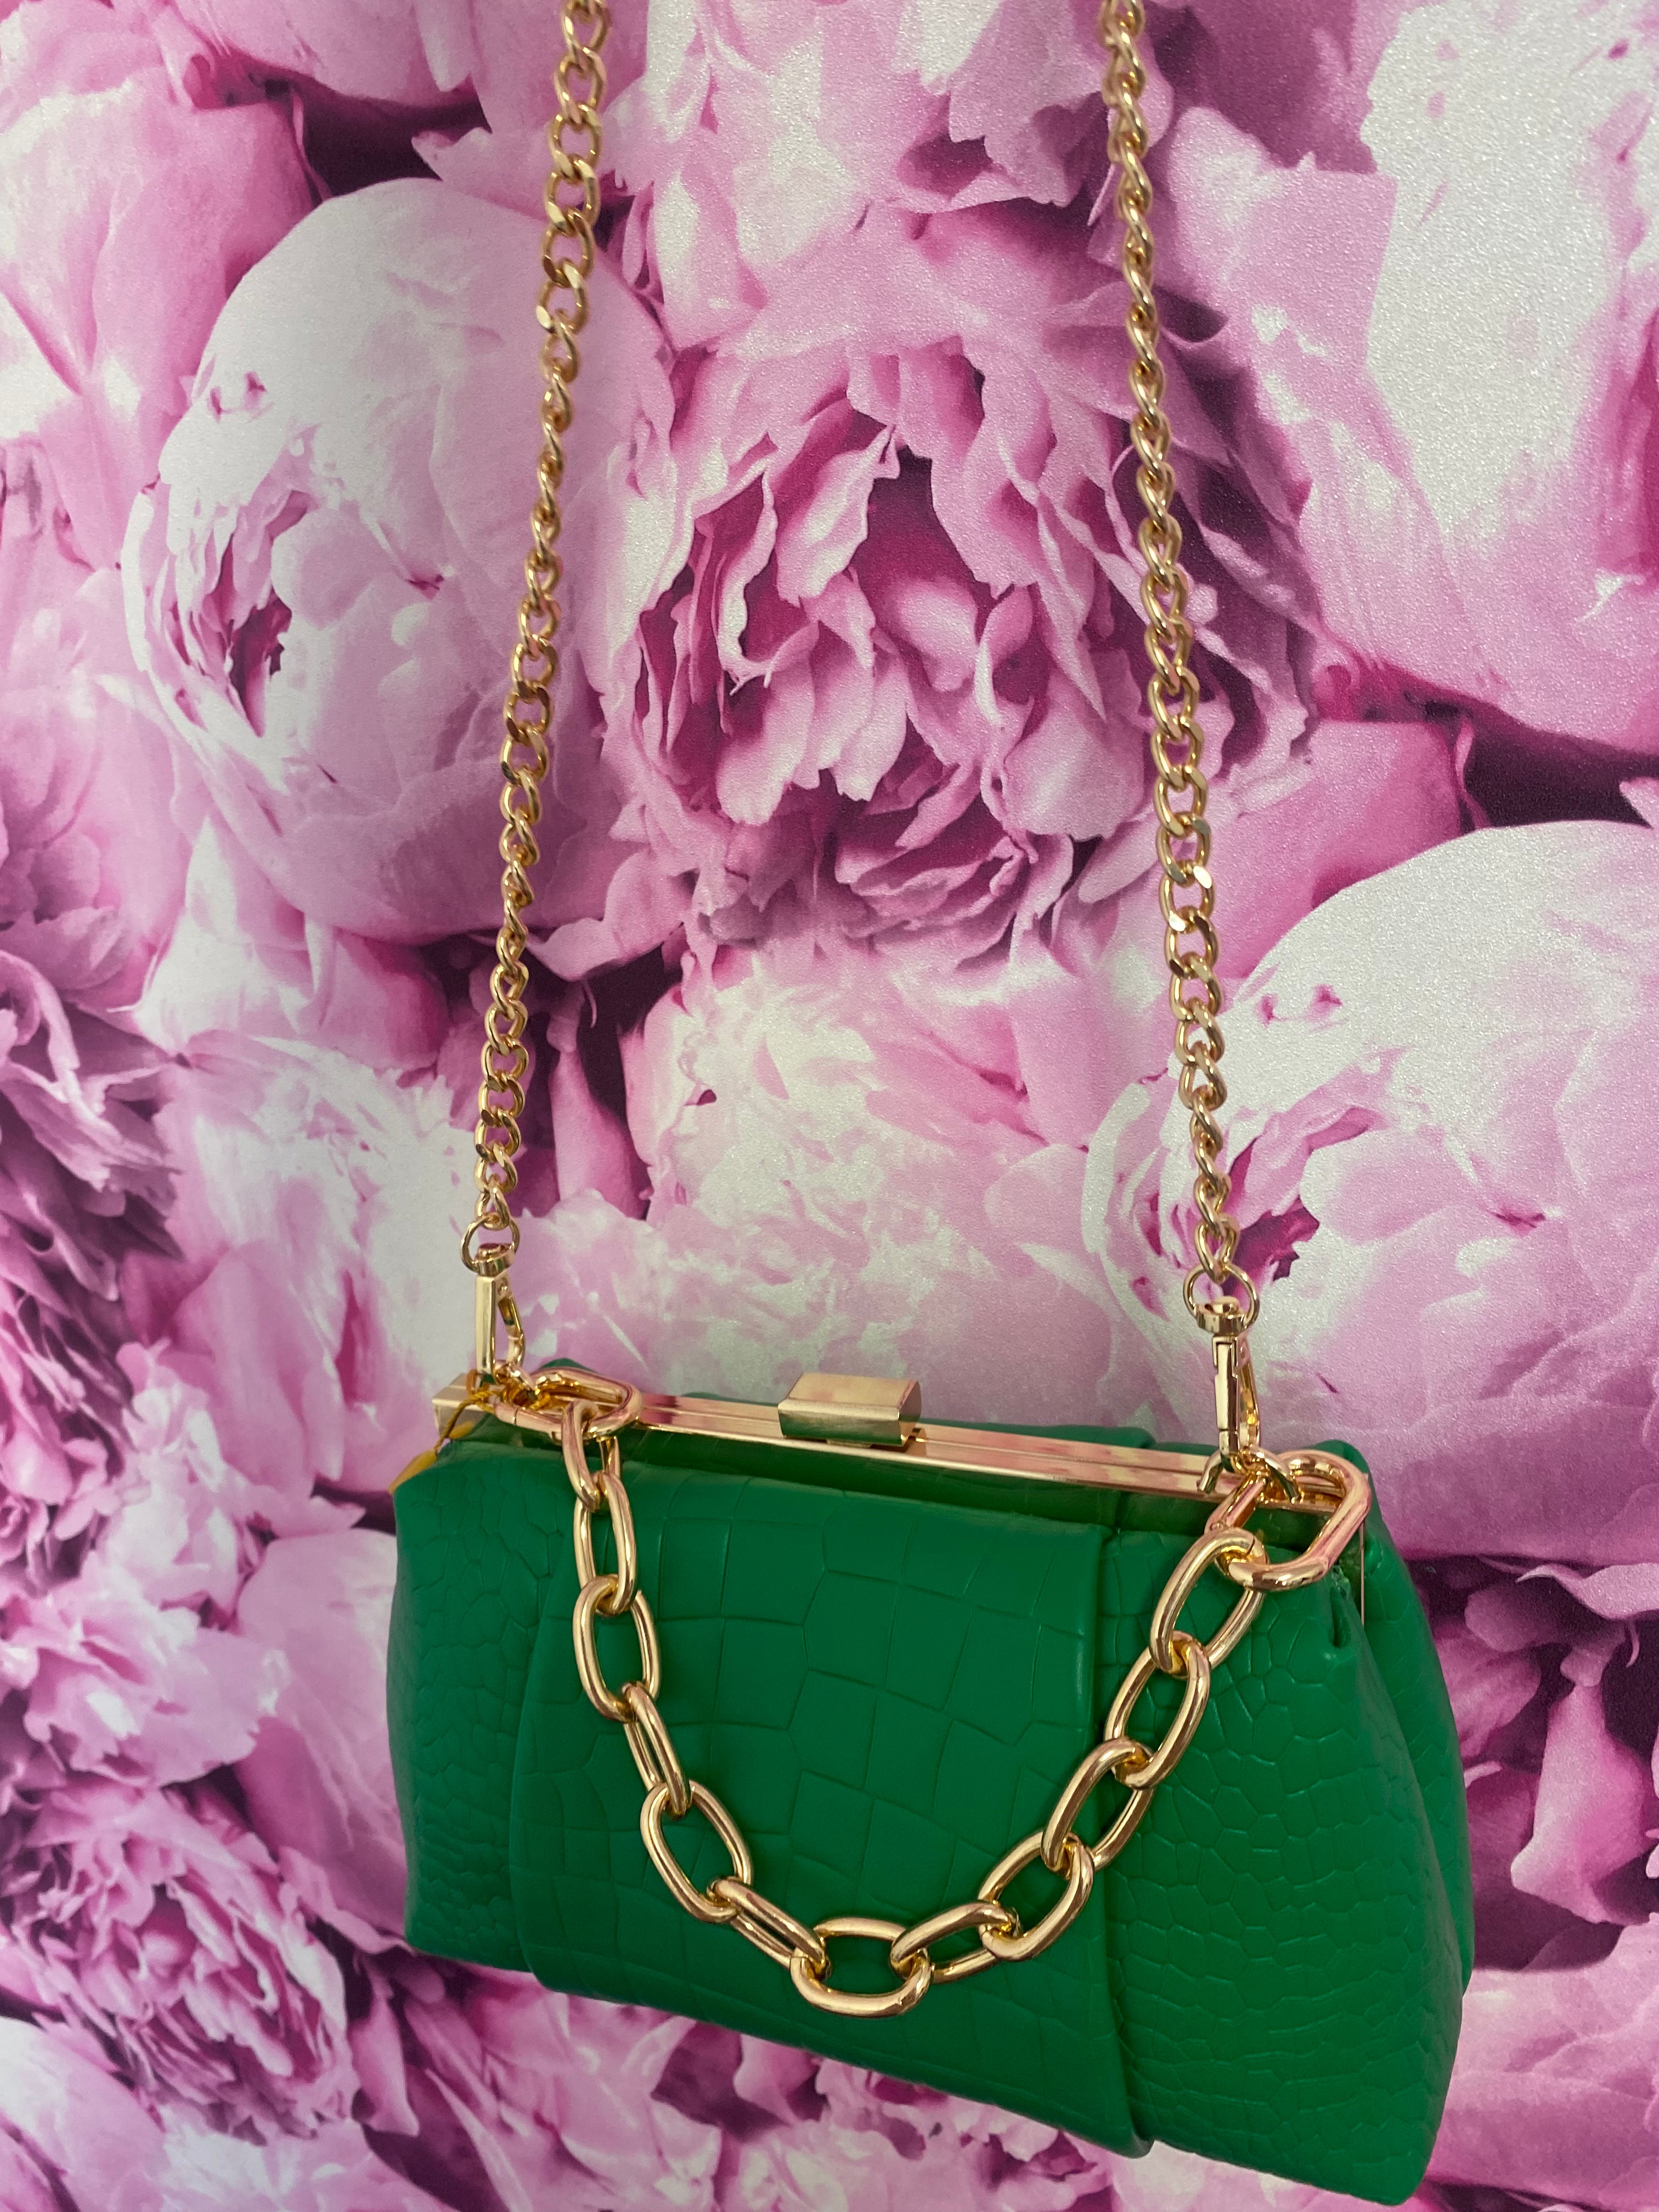 Green and Gold Crossbody Handbag